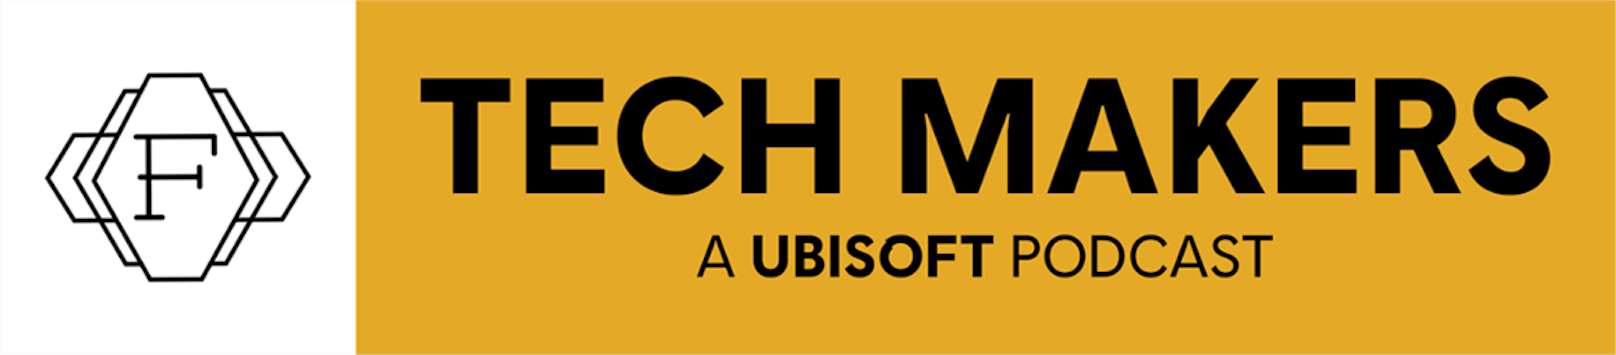 - Ubisoft startete "Tech Makers", einen fünf-teiligen Podcast, der von Bruno Guglielminetti erstellt und von Stéphane Berthomet produziert ist. 